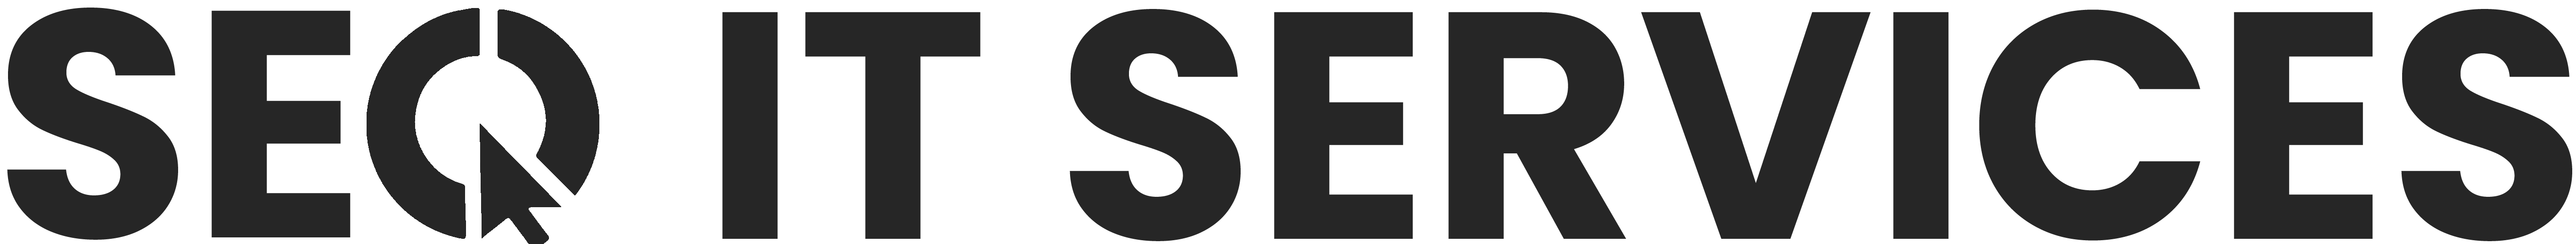 SEQ IT Services